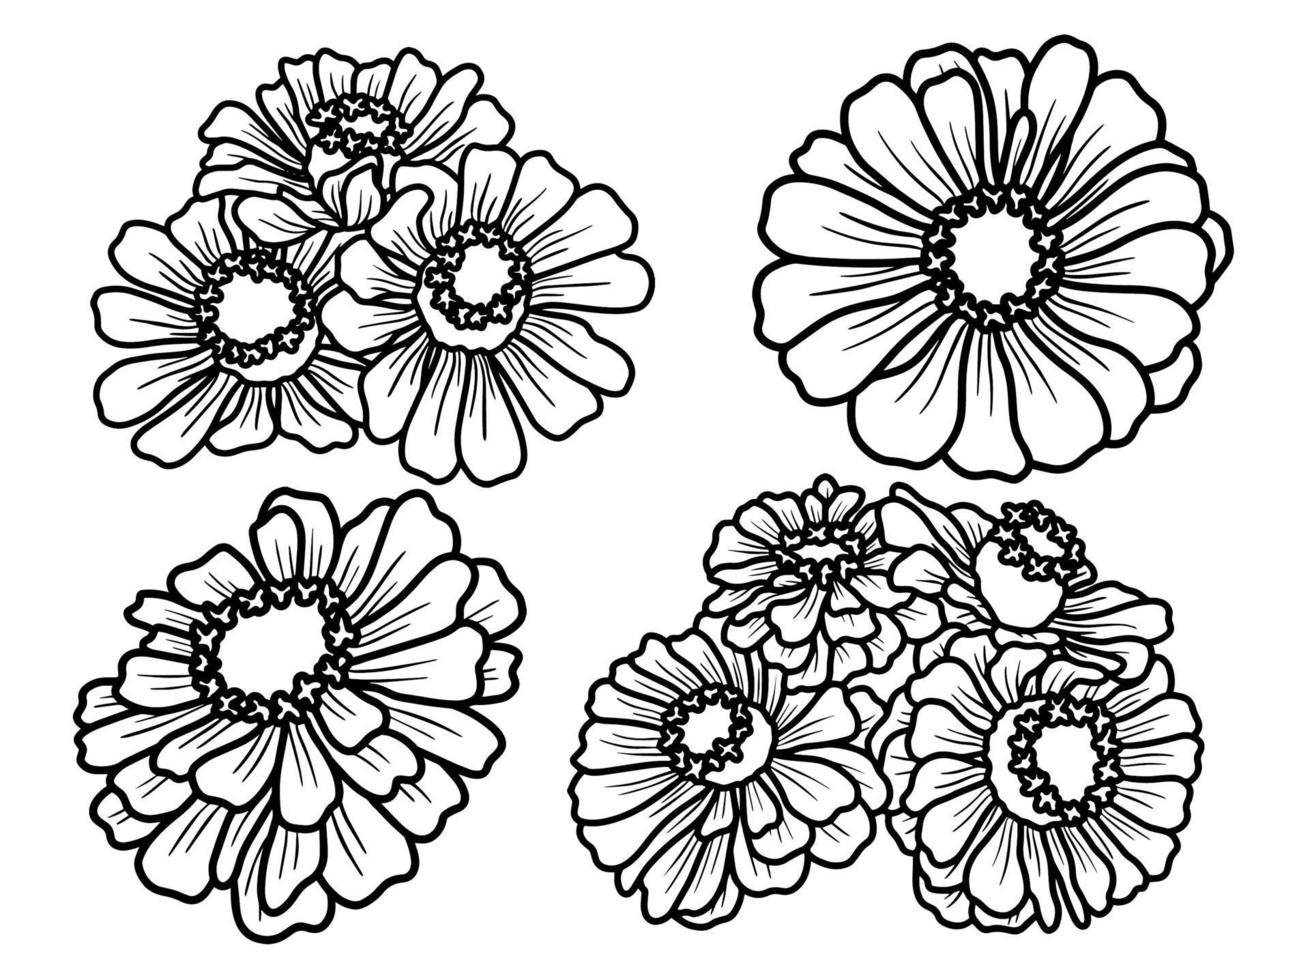 Flowers line art aarangement vector